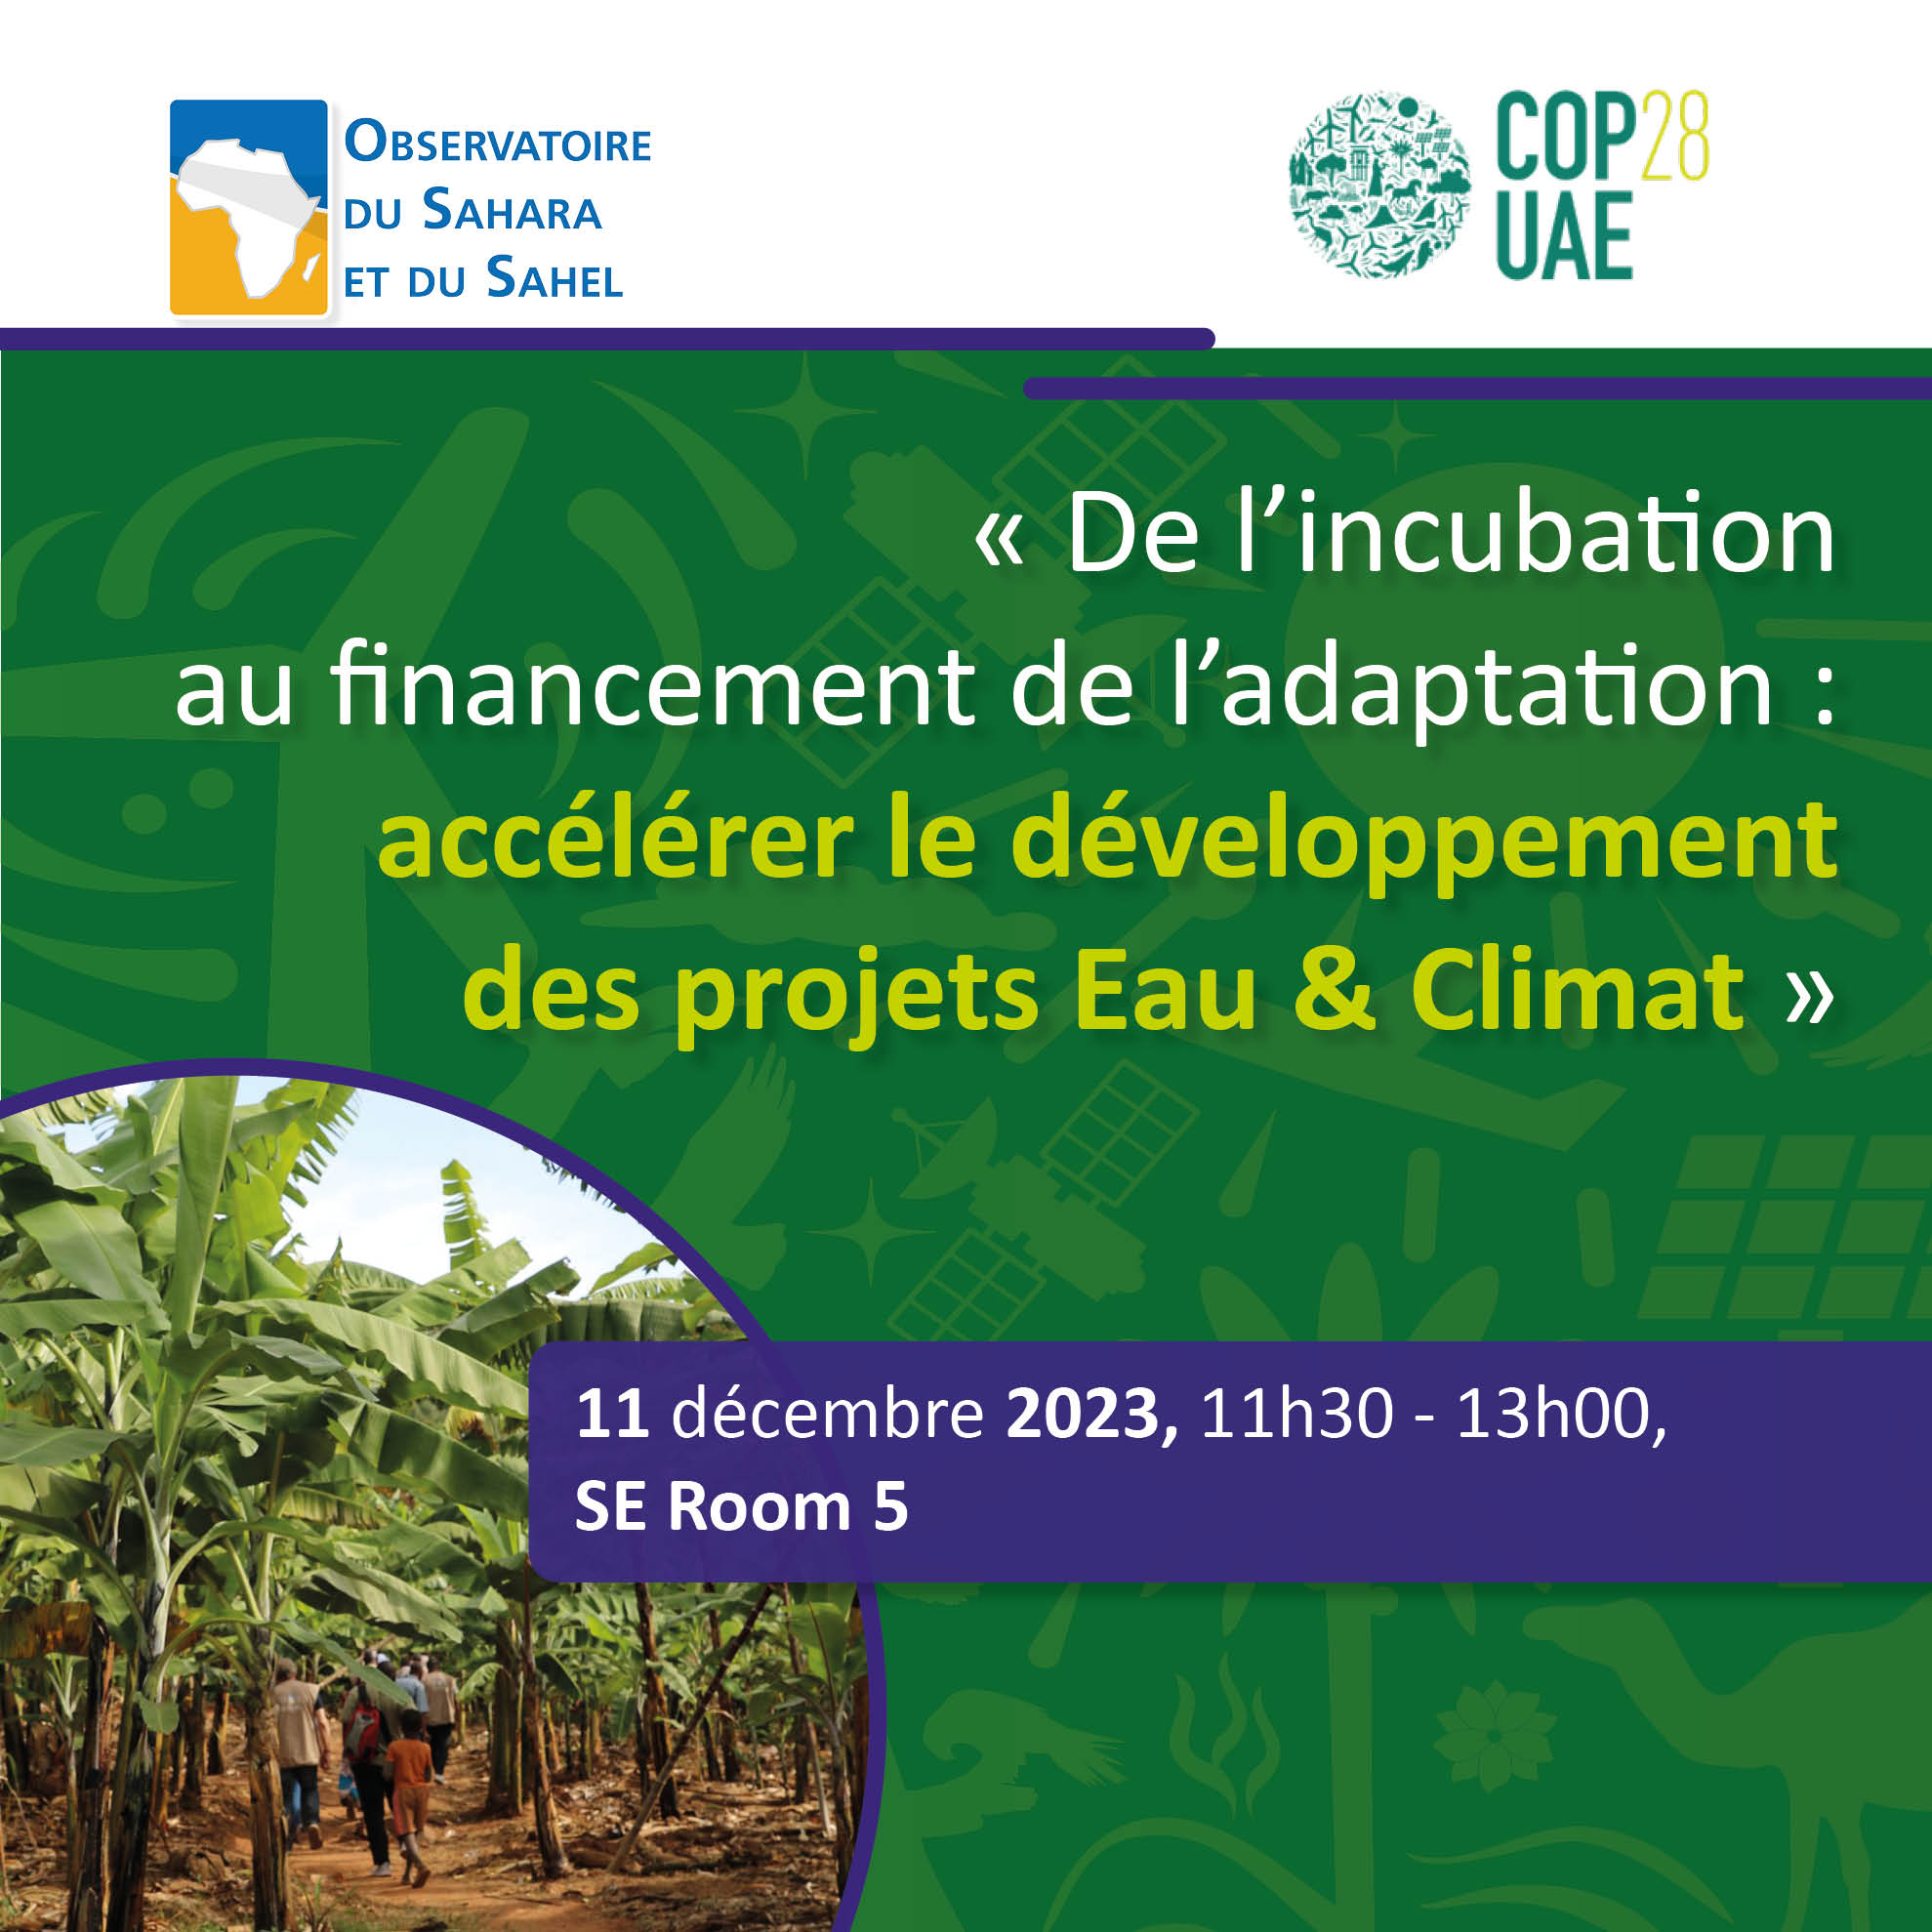  COP28UAE - De l’incubation au financement de l’adaptation : accélérer le développement des projets Eau & Climat”, le 11 décembre 2023 au: SE Room 5